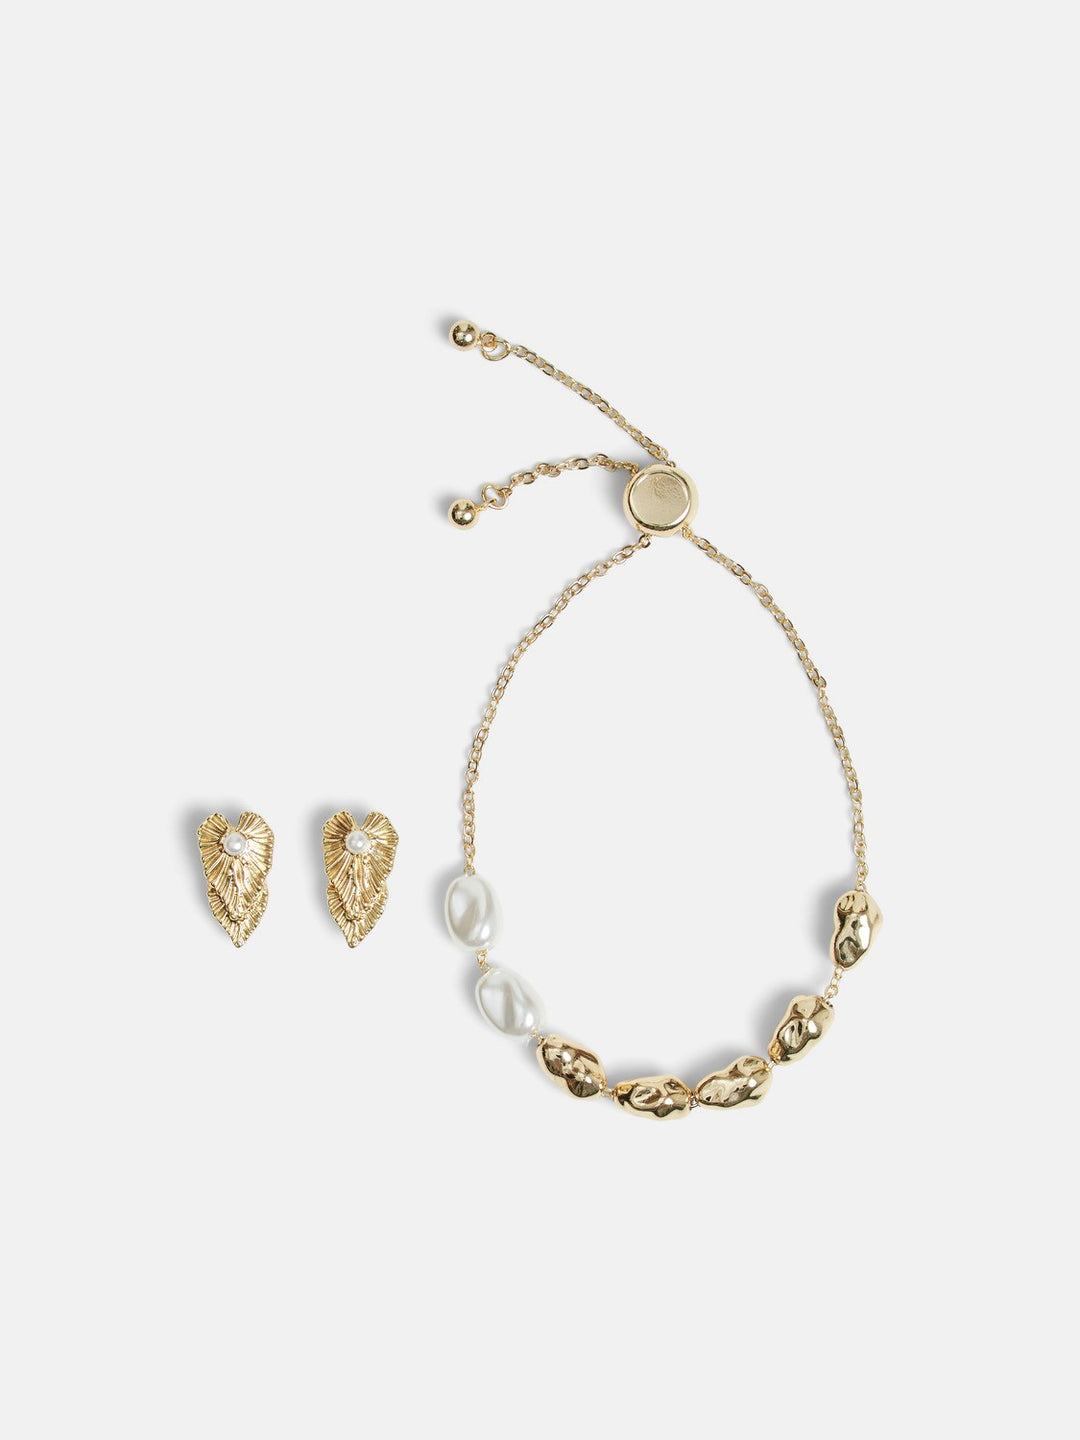 Daisy Bracelet & Earrings Set